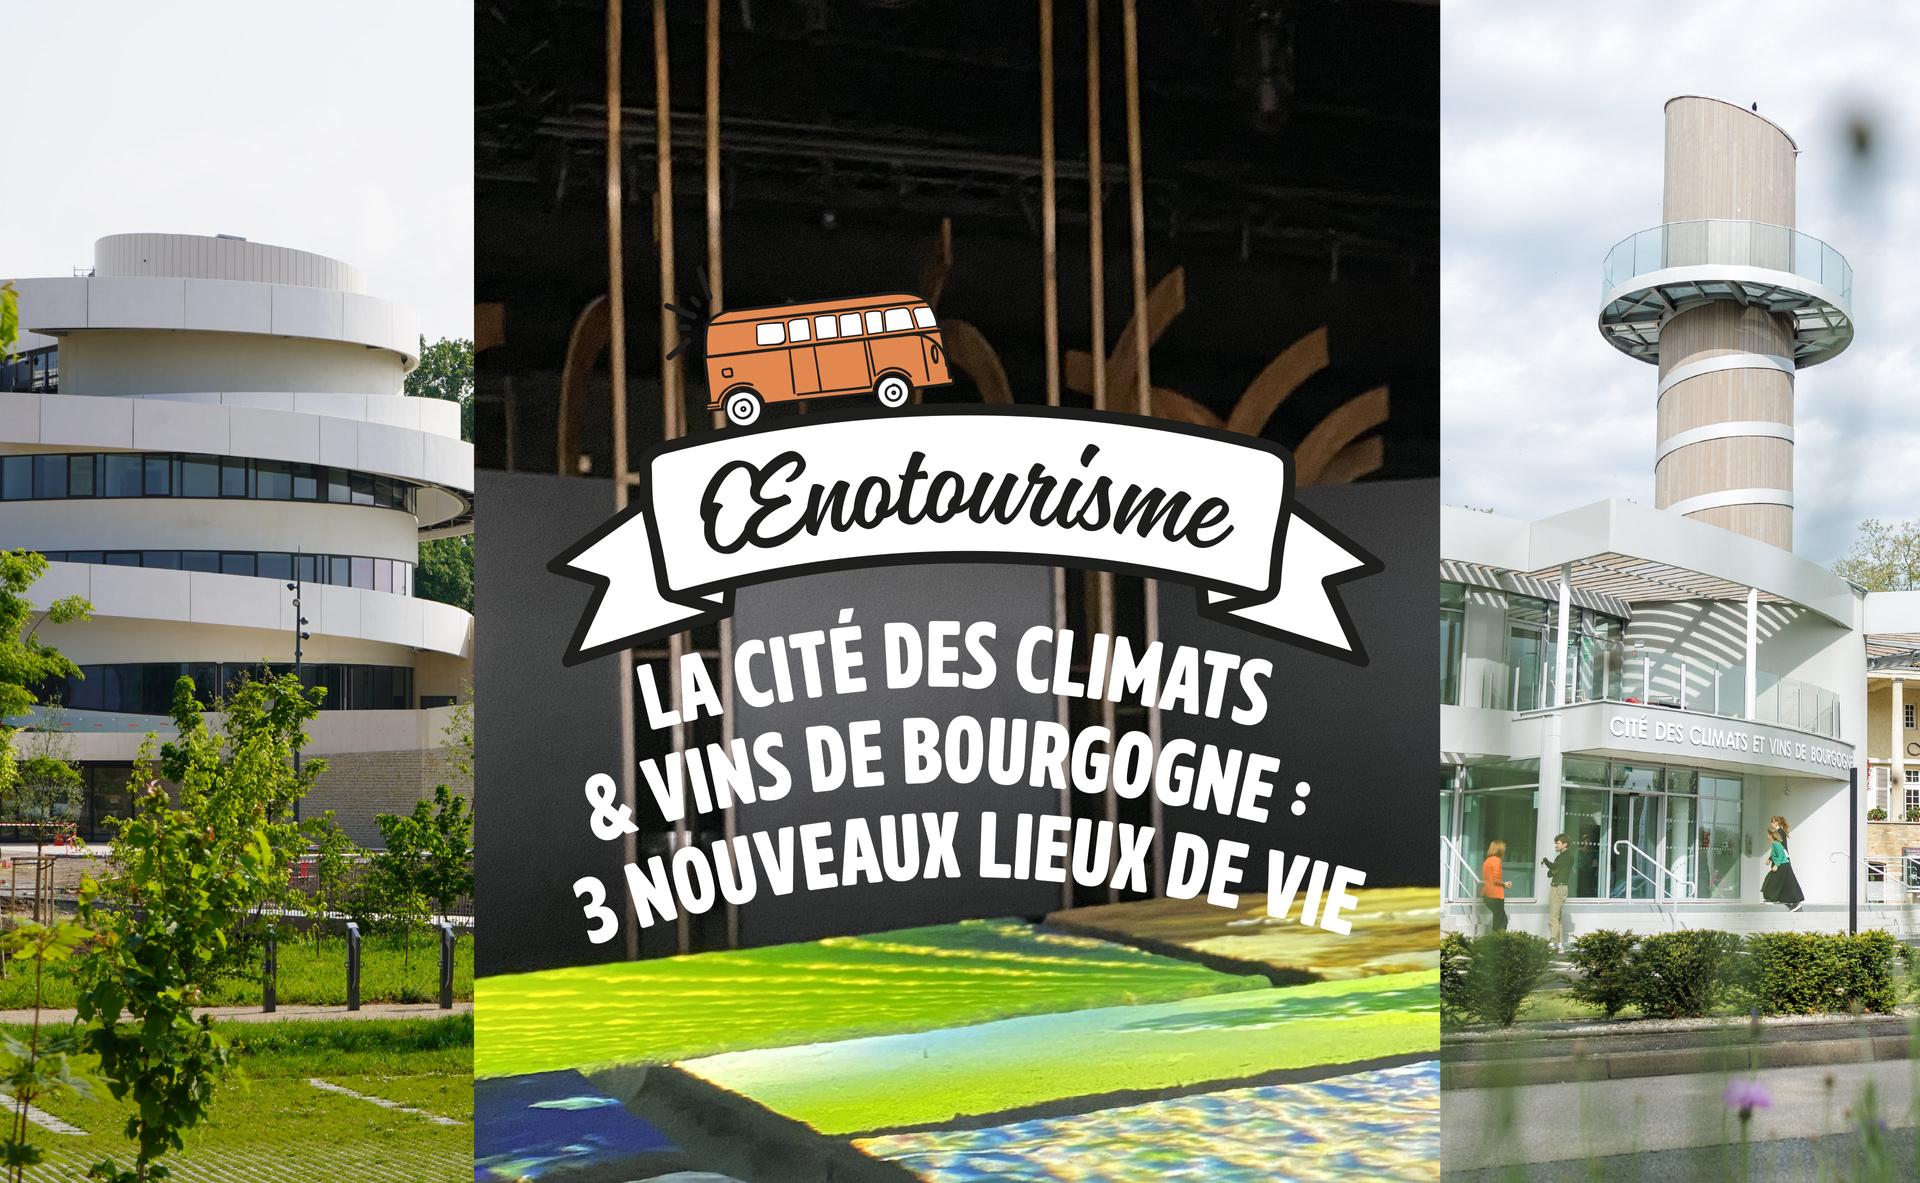 La Cité des Climats & Vins de Bourgogne : 3 nouveaux lieux de vie sur le territoire